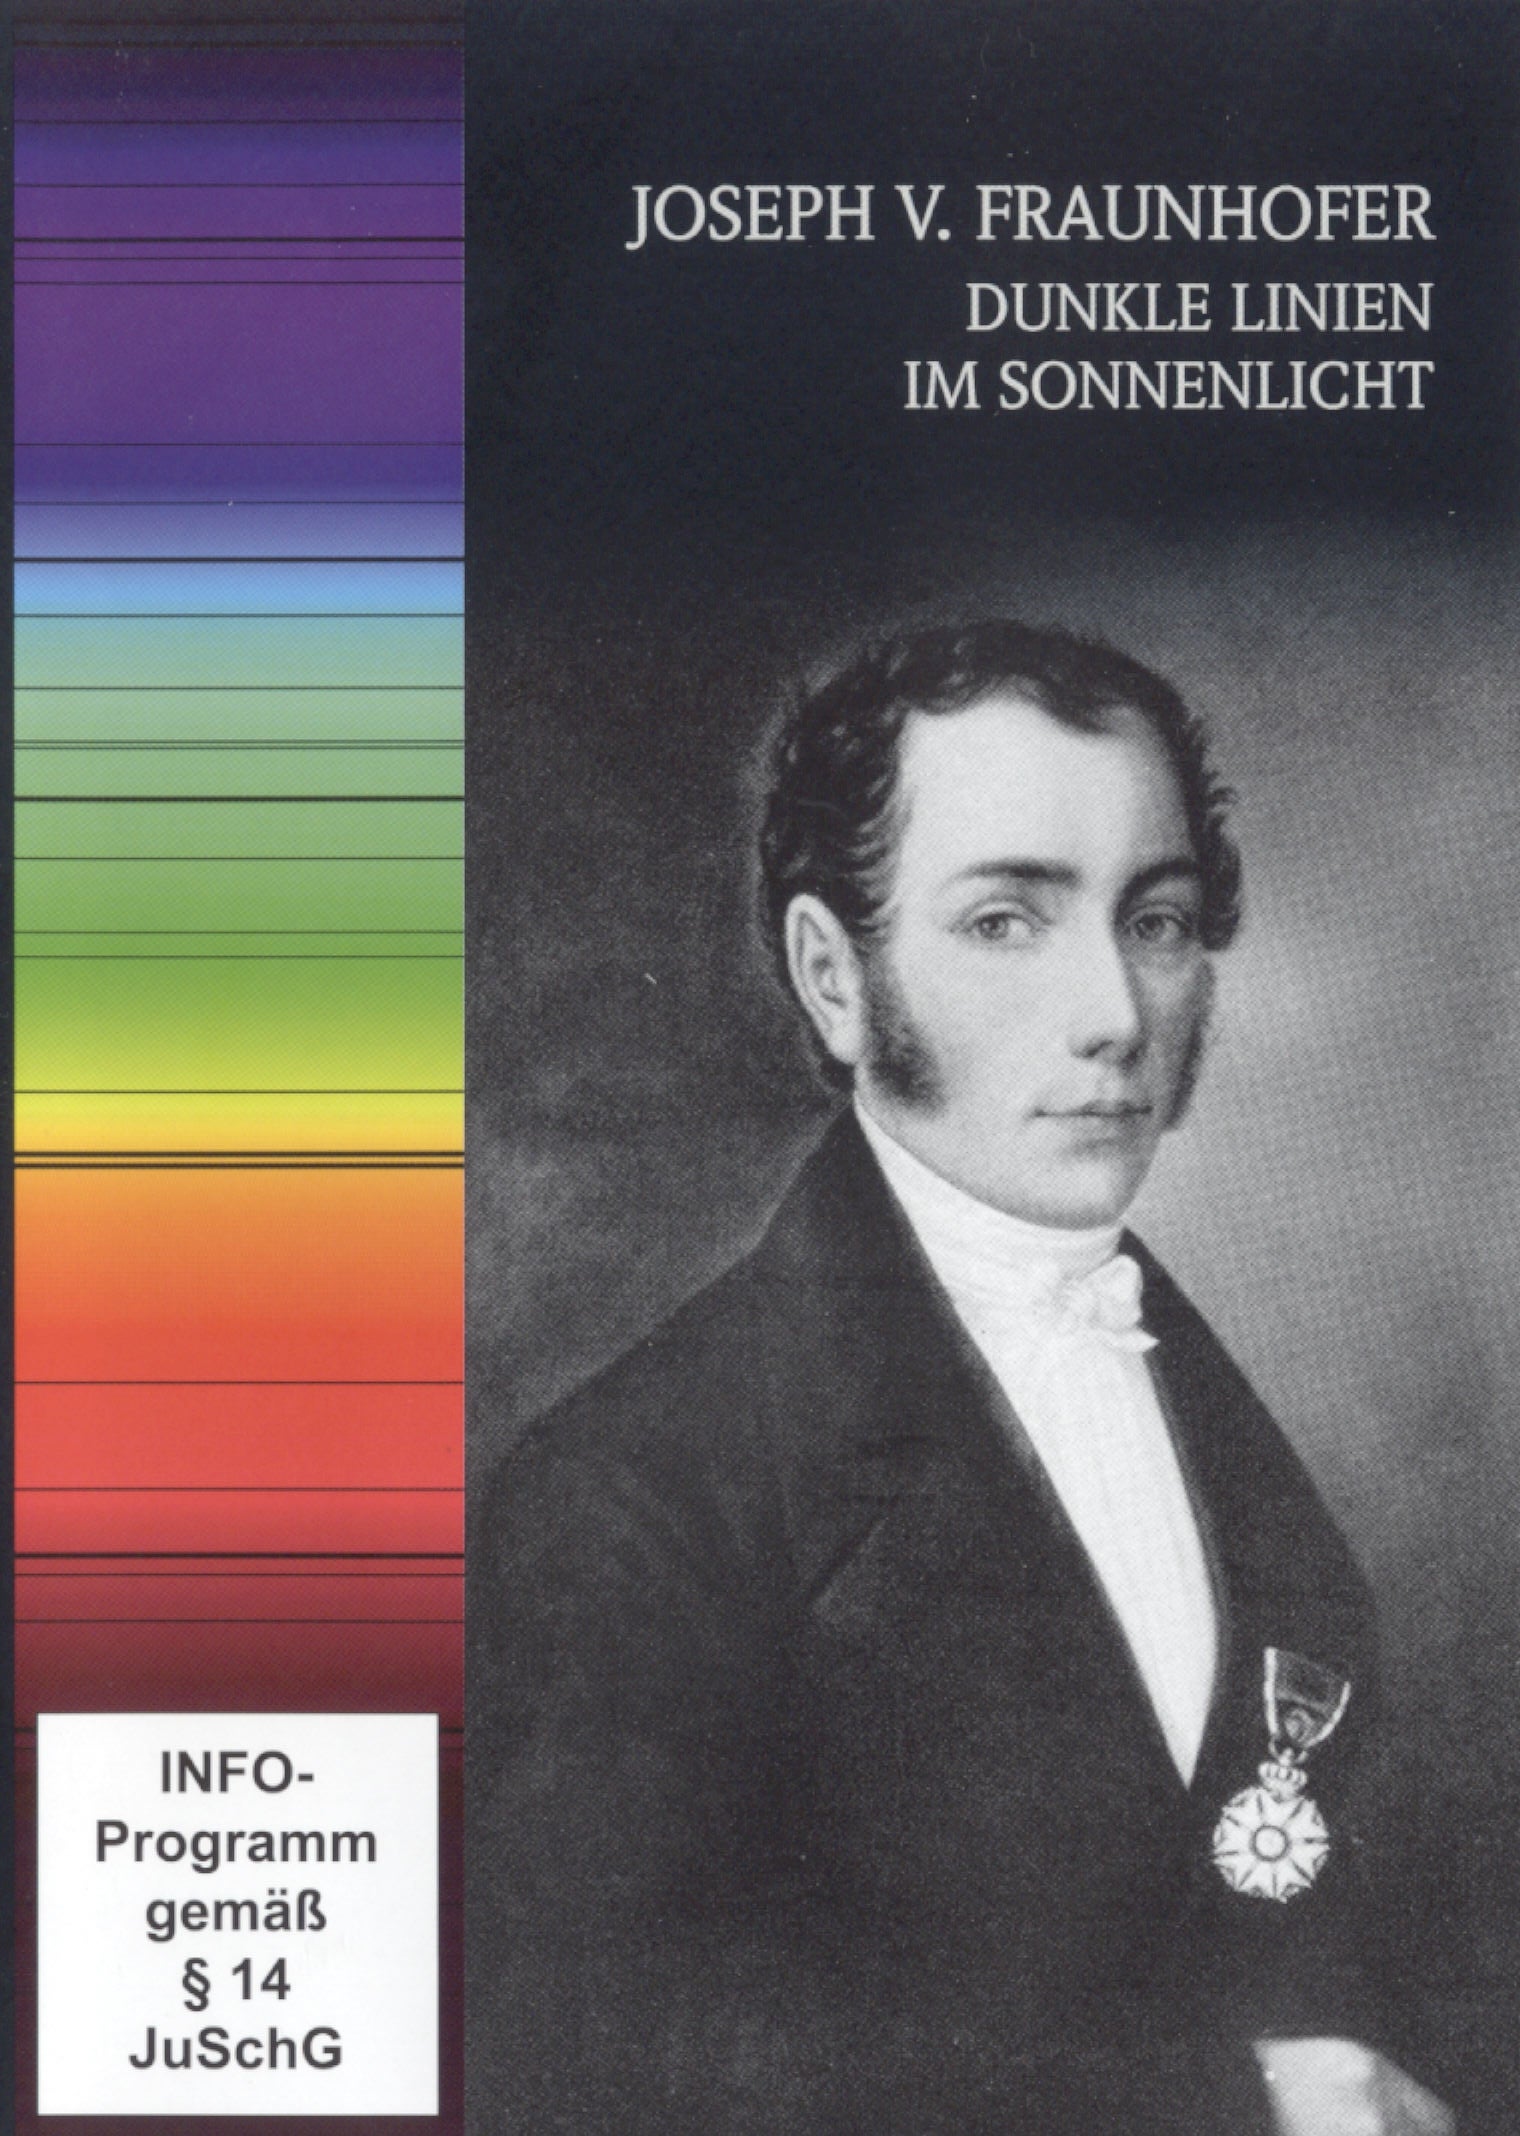 Joseph v. Fraunhofer 